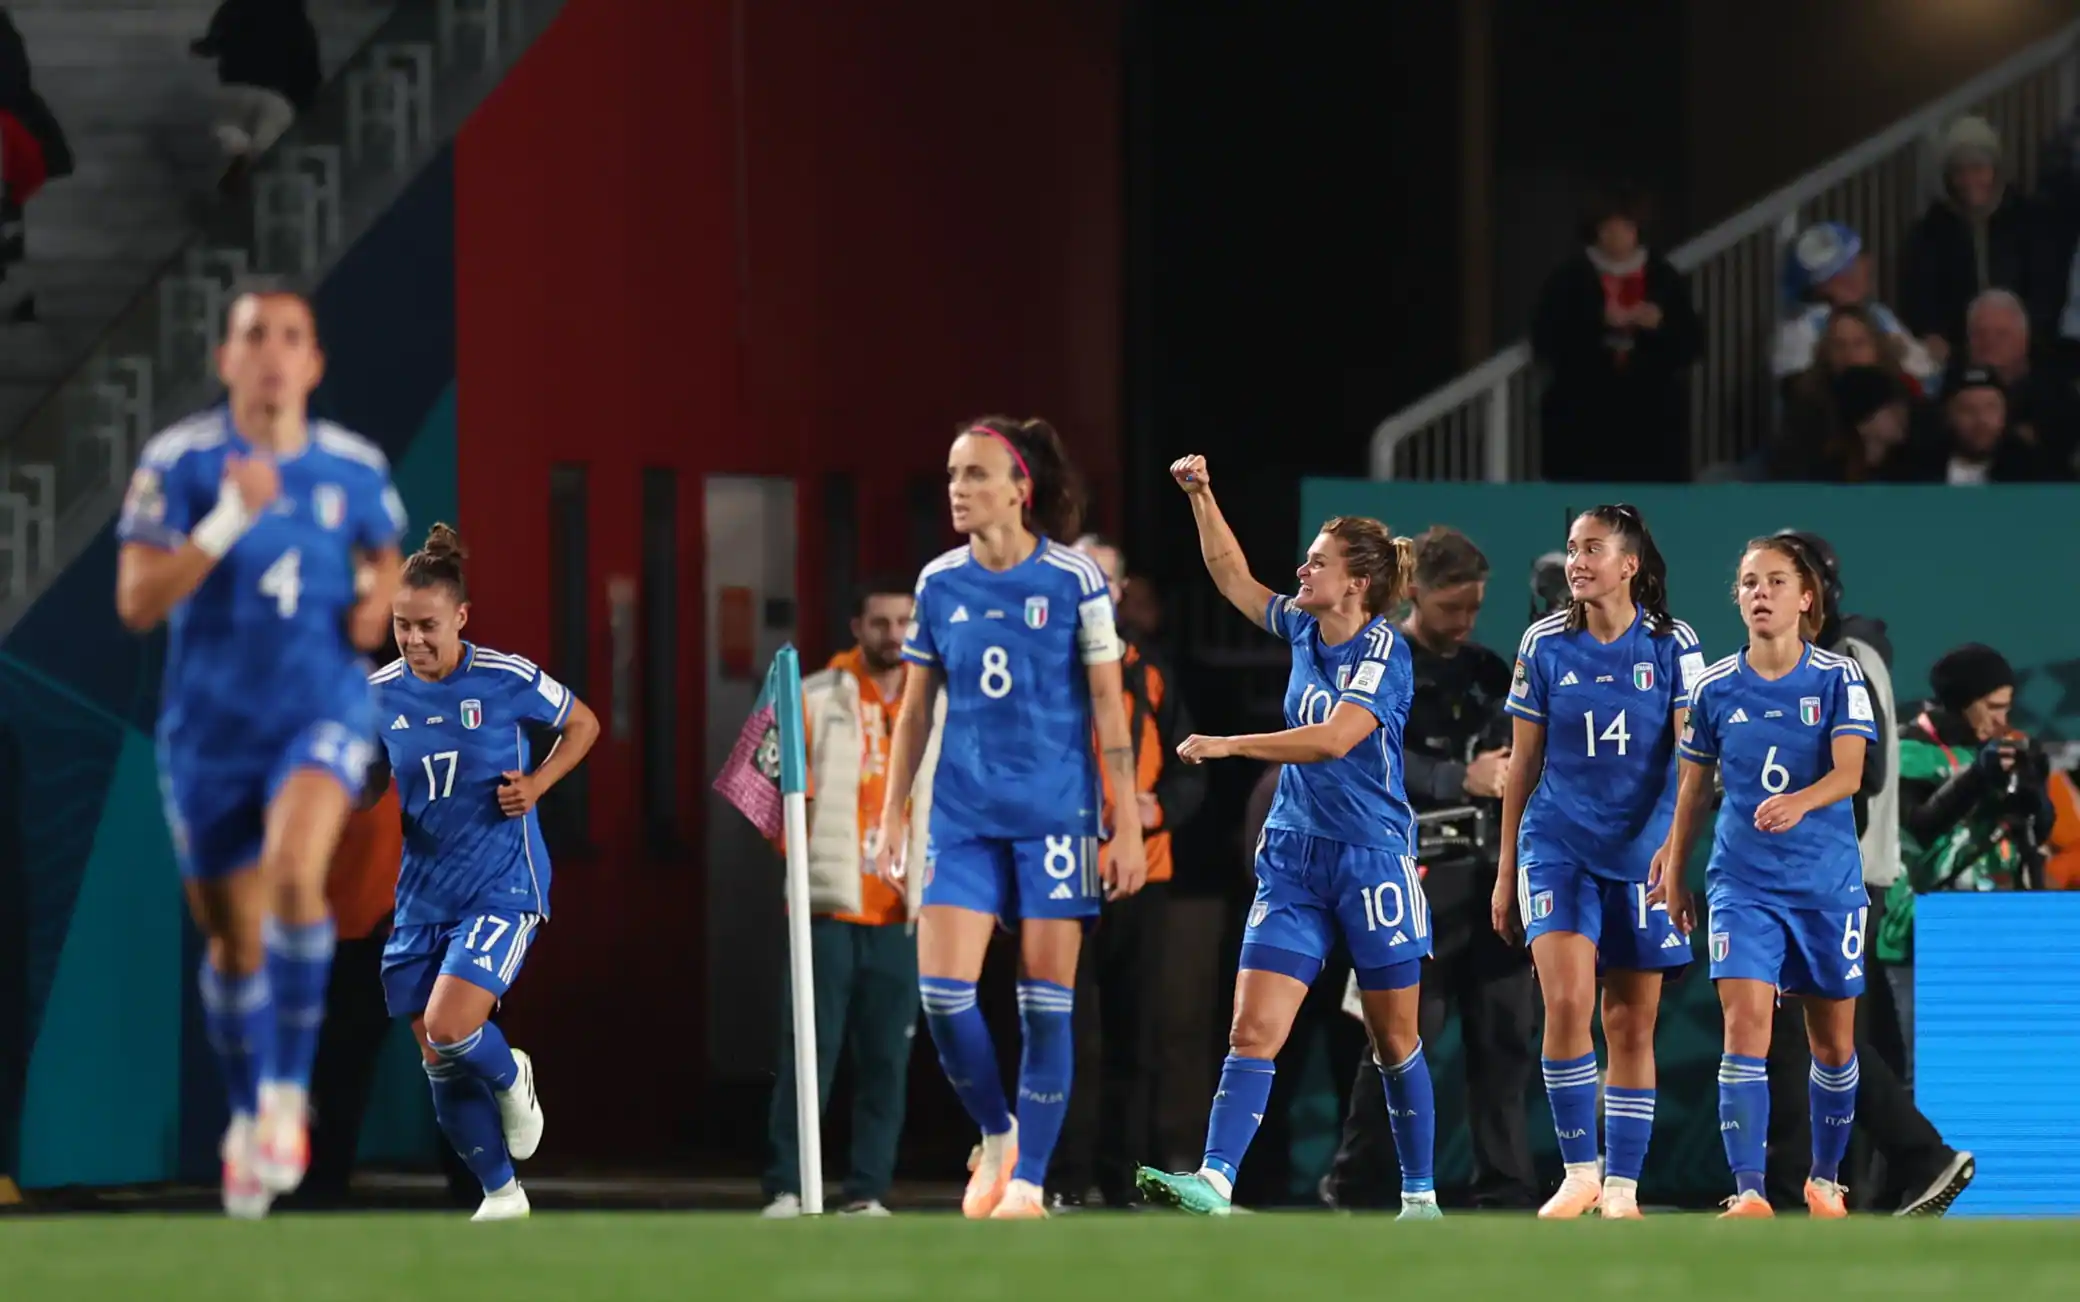 La Nazionale femminile vince all'esordio contro l'Argentina: decisivo il gol di Girelli